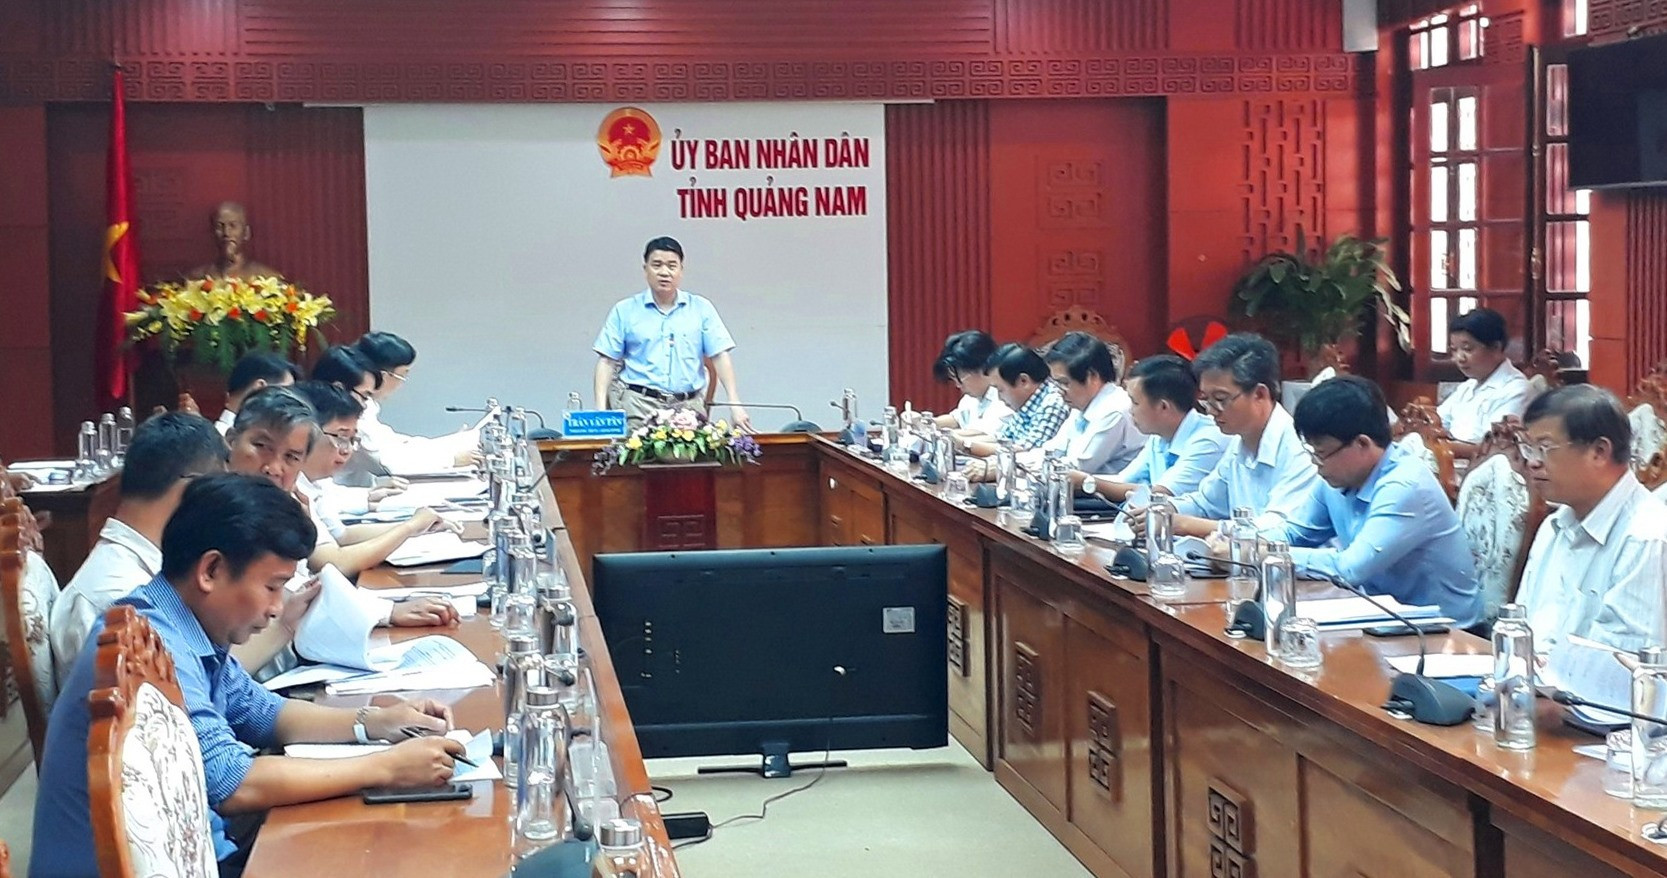 Phó Chủ tịch UBND tỉnh Trần Văn Tân chủ trì buổi làm việc. Ảnh: X.P